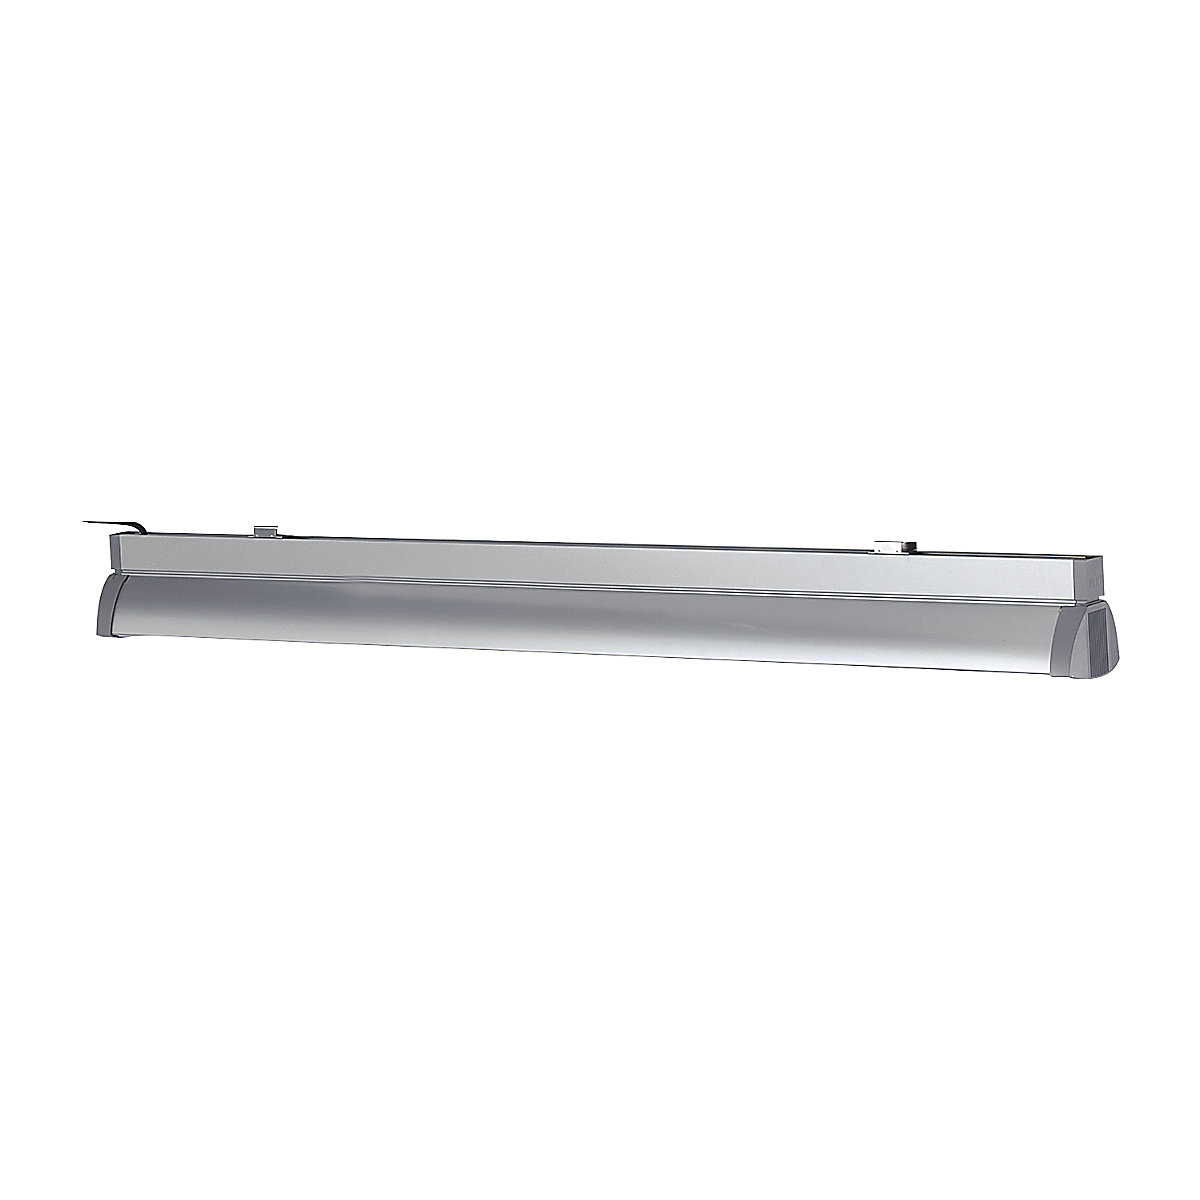 Svítidlo pro pracoviště – RAU, zářivky 2 x 54 W, délka 1200 mm, pro šířku stolu 1200 mm-3